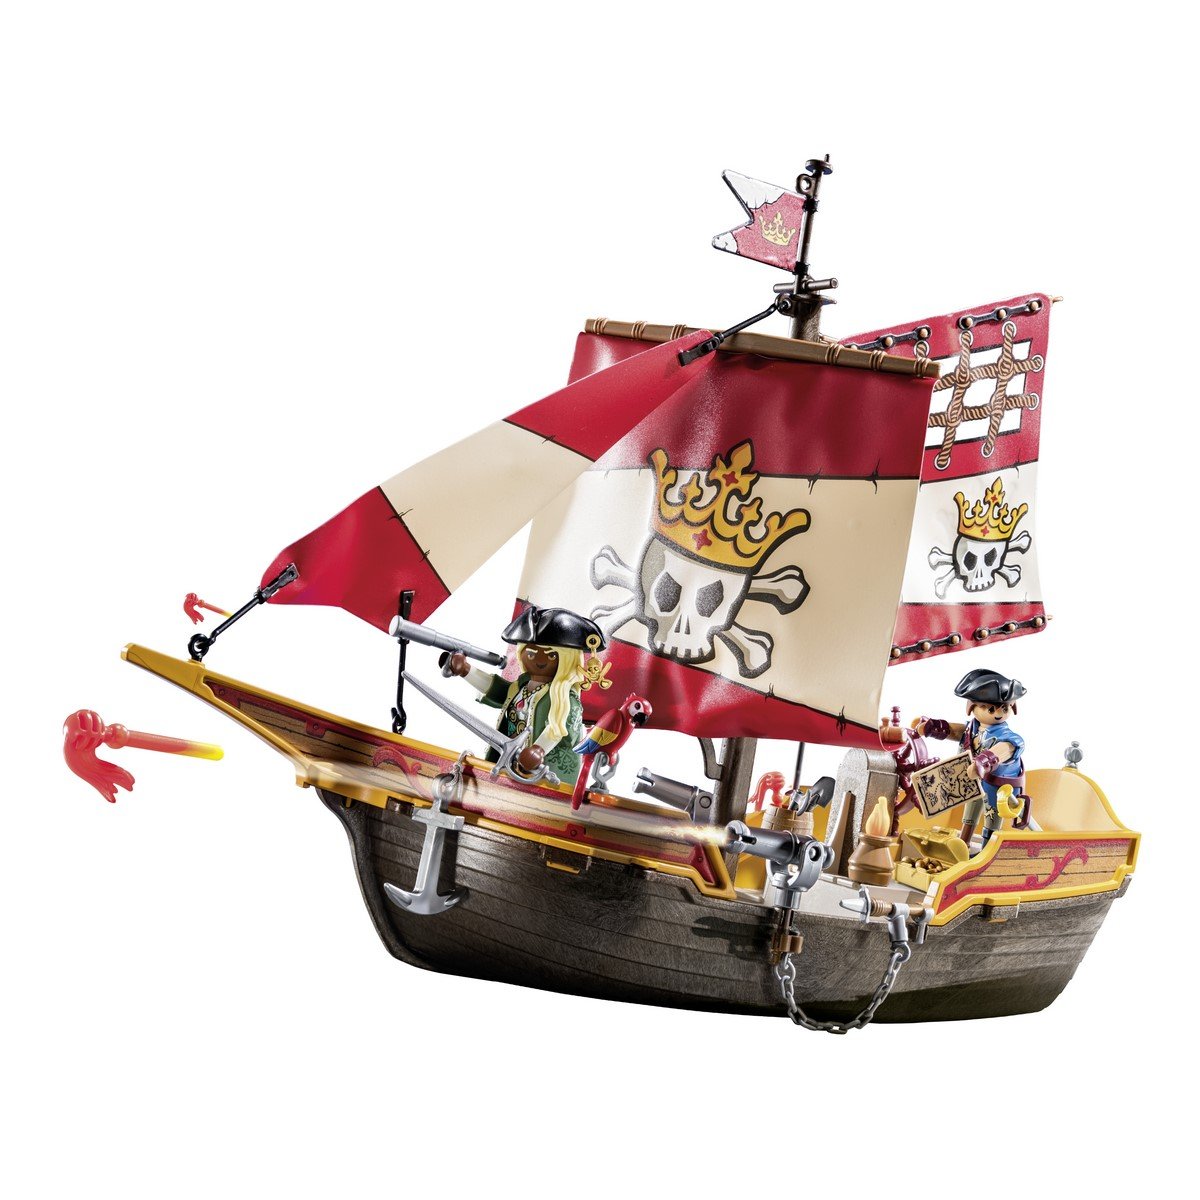 Chaloupe des pirates Playmobil 71418 - La Grande Récré